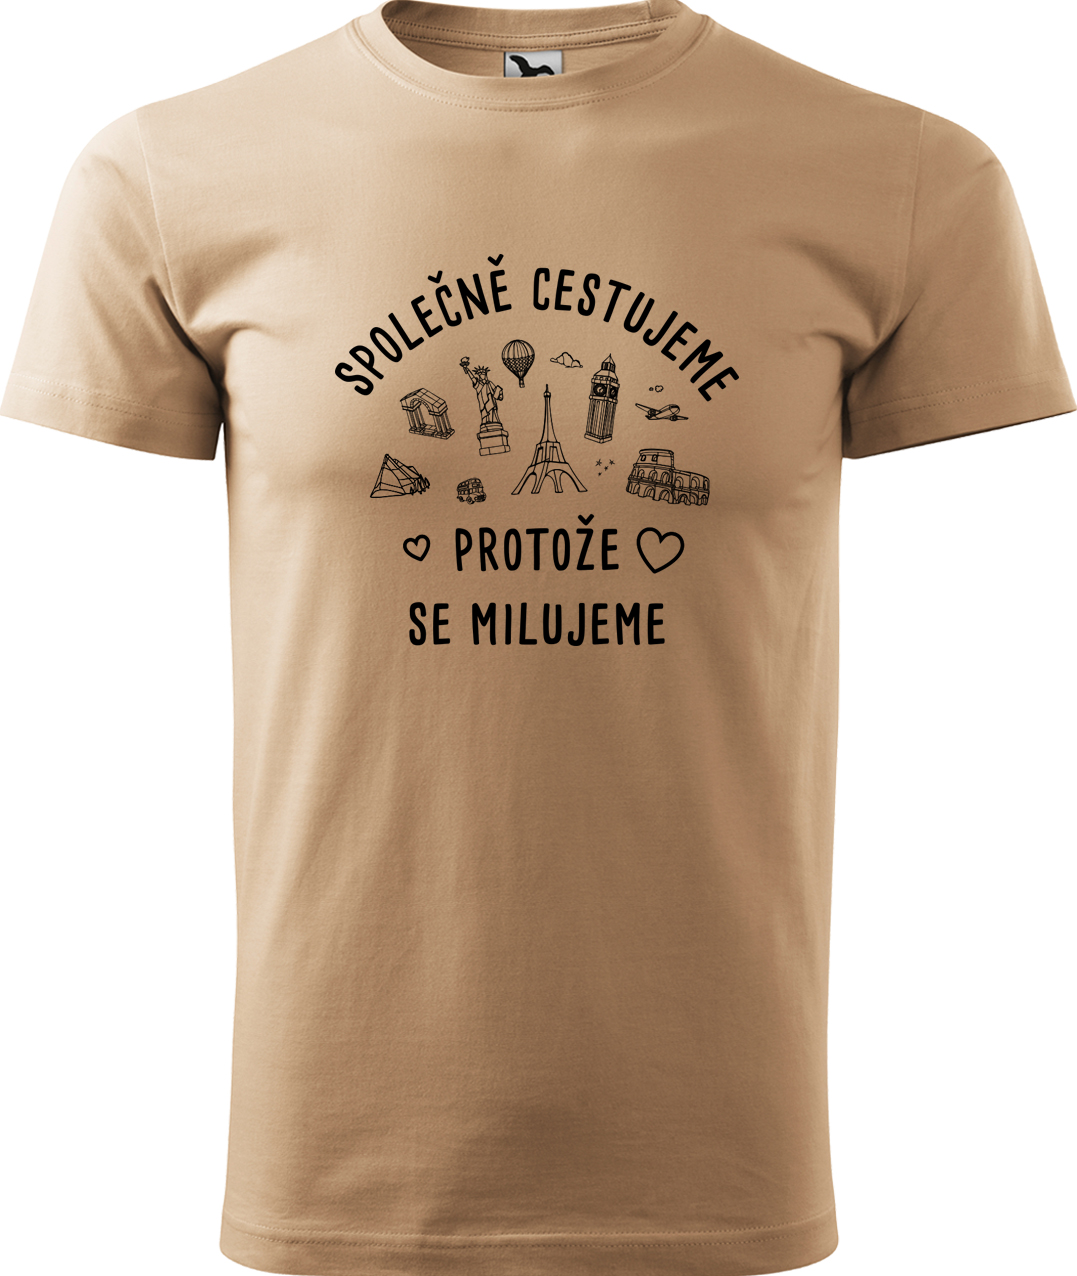 Pánské cestovatelské tričko - Společně cestujeme protože se milujeme Velikost: M, Barva: Písková (08), Střih: pánský